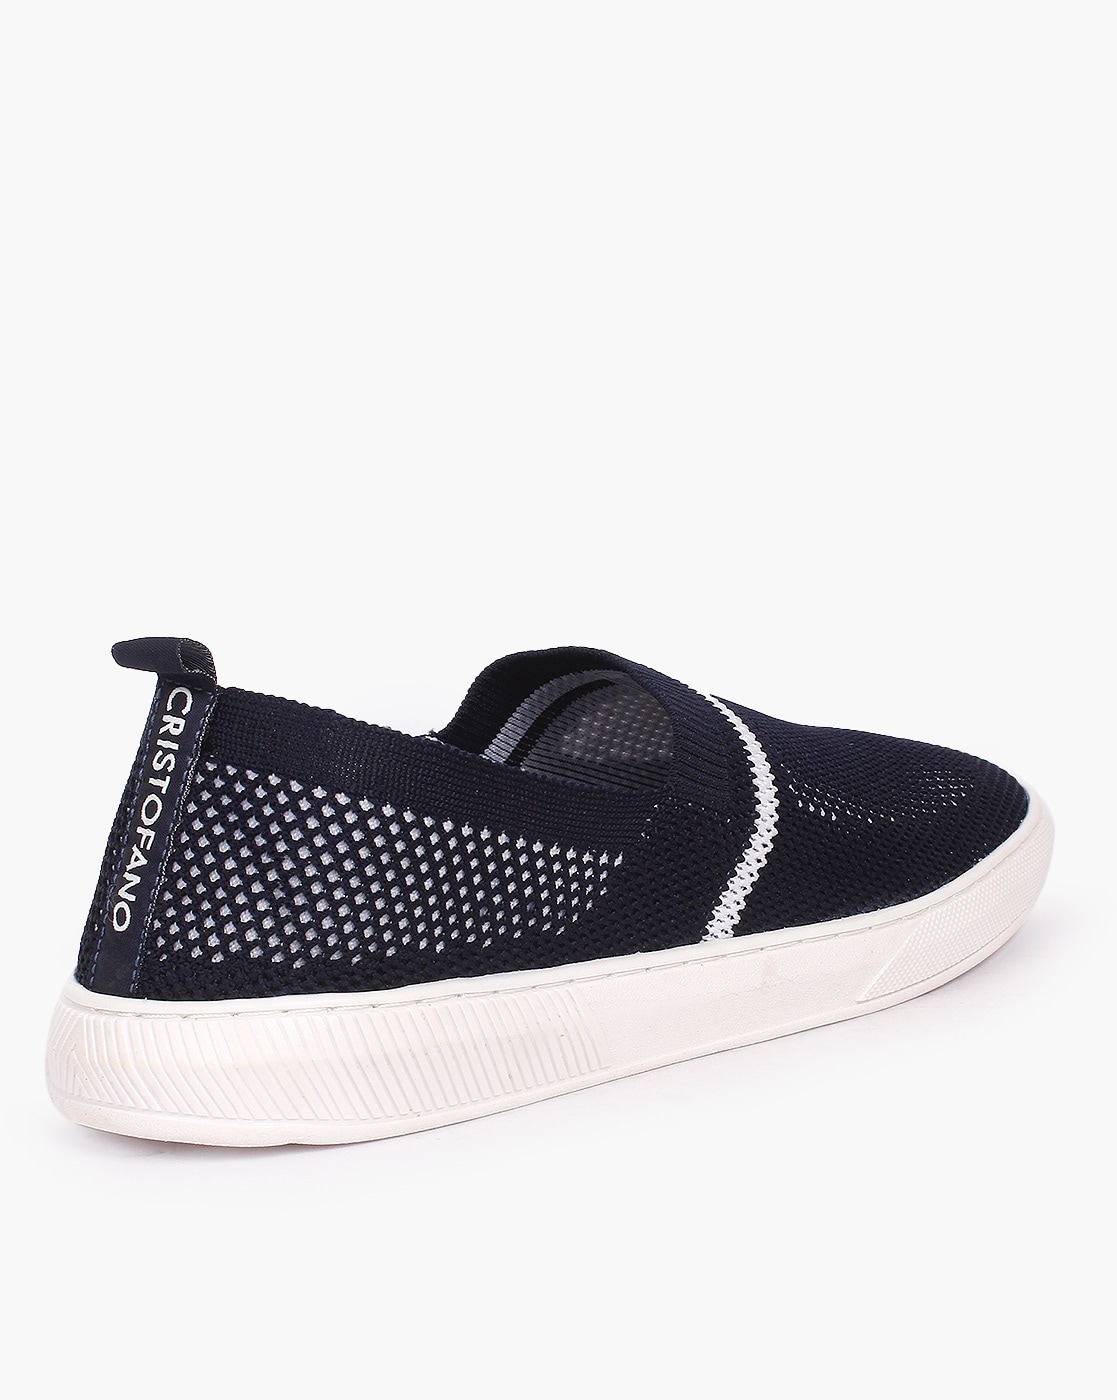 Buy Tan & Black Casual Shoes for Men by CRISTOFANO Online | Ajio.com